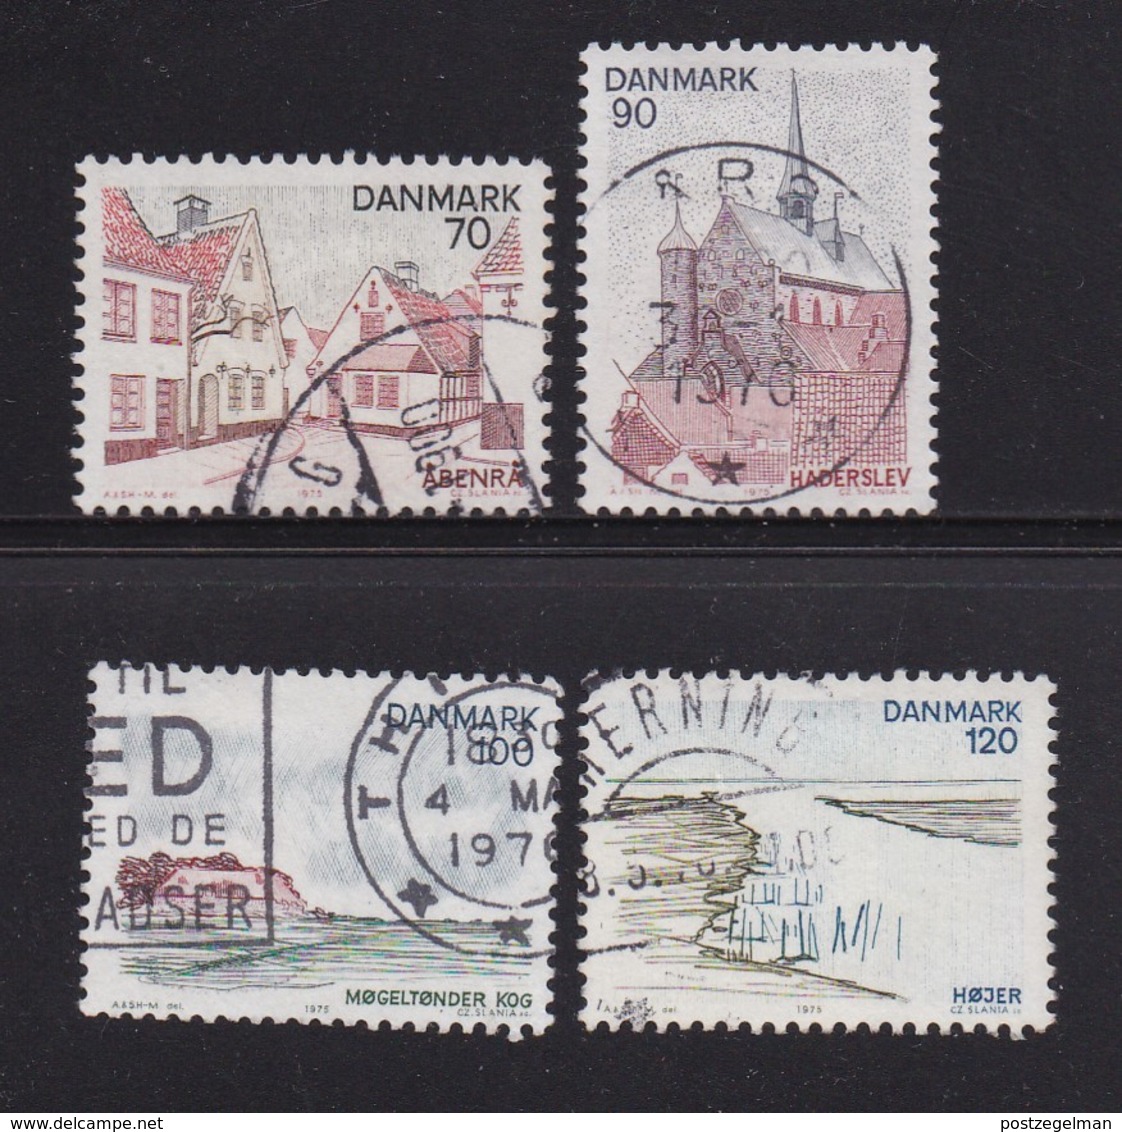 DENMARK, 1975, Used Stamp(s), Tourism Jutland,  MI 598-601, #10124, Complete - Gebruikt